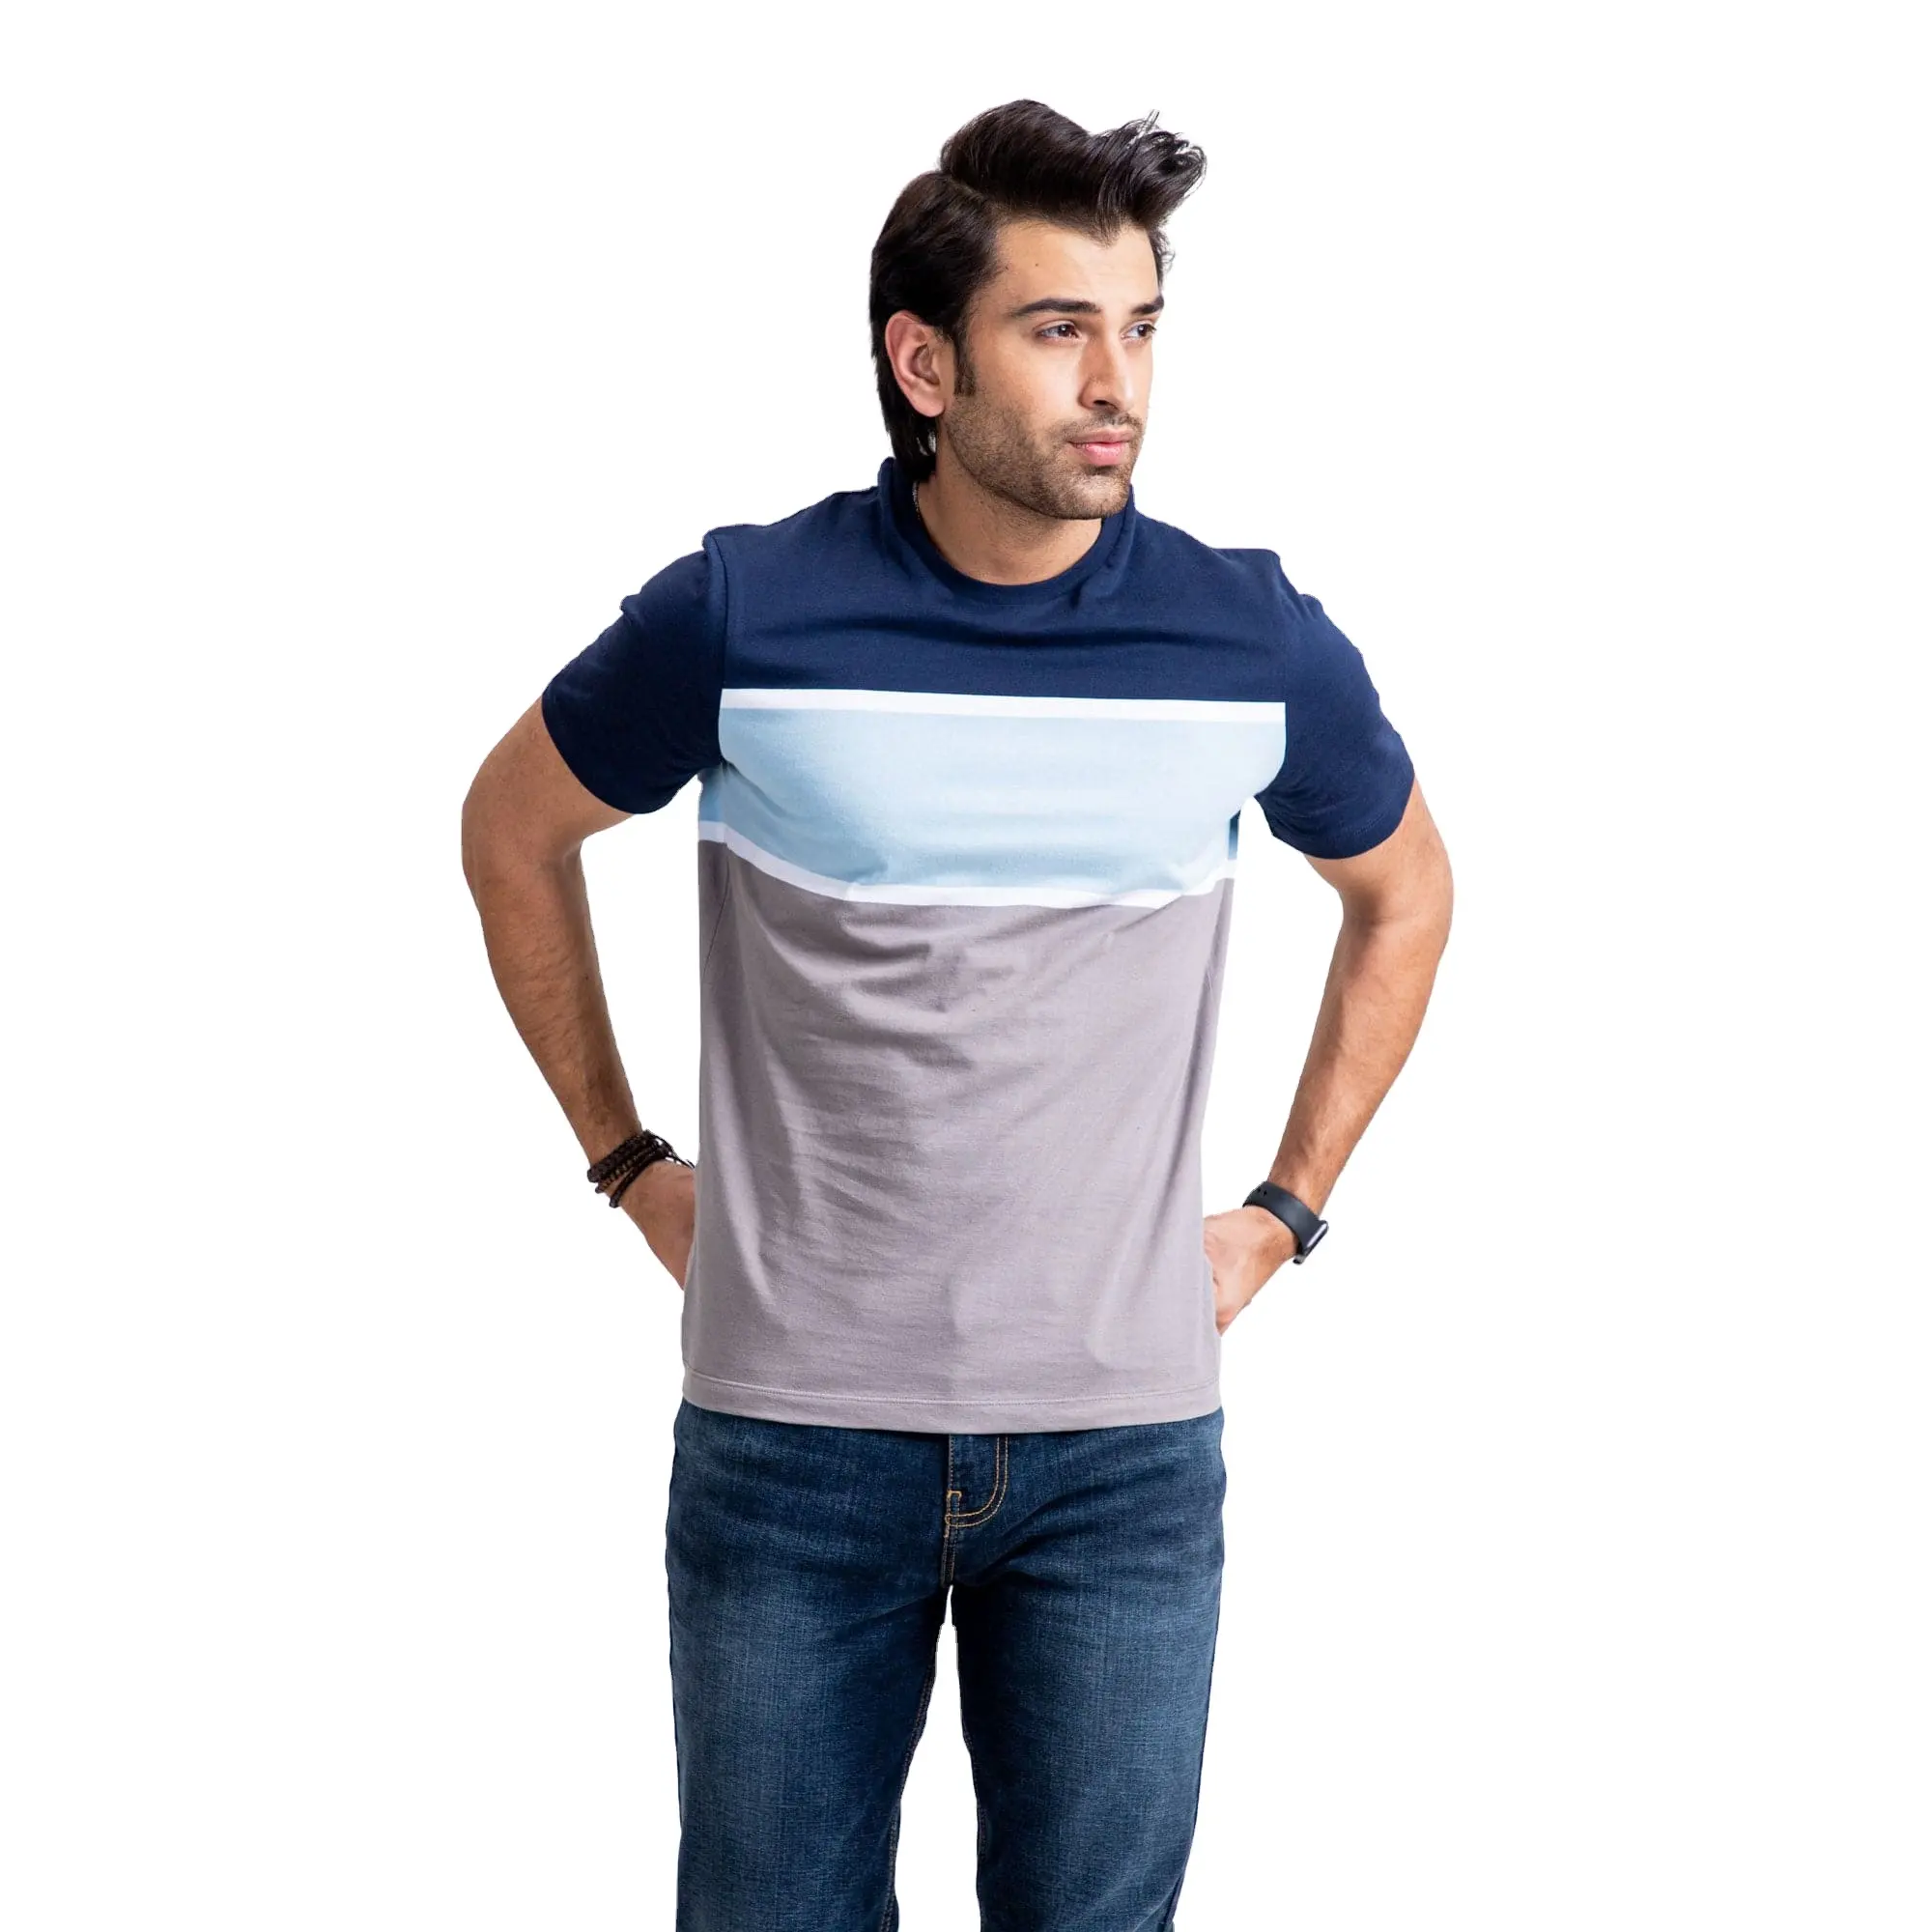 Ein hundert % Baumwolle maßge schneiderte Herren T-Shirts übermäßig aus gezeichnete Jungs Menge benutzer definierte Emblem OEM Shirts für Jungen Mode